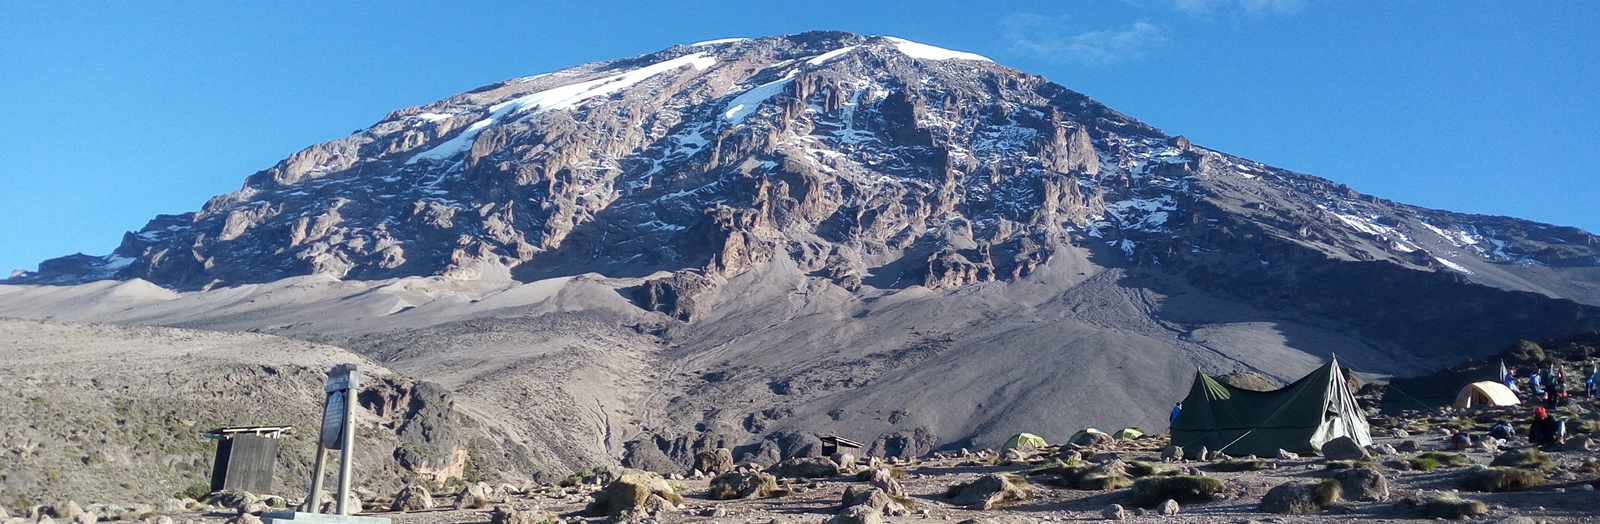 Kilimanjaro view point